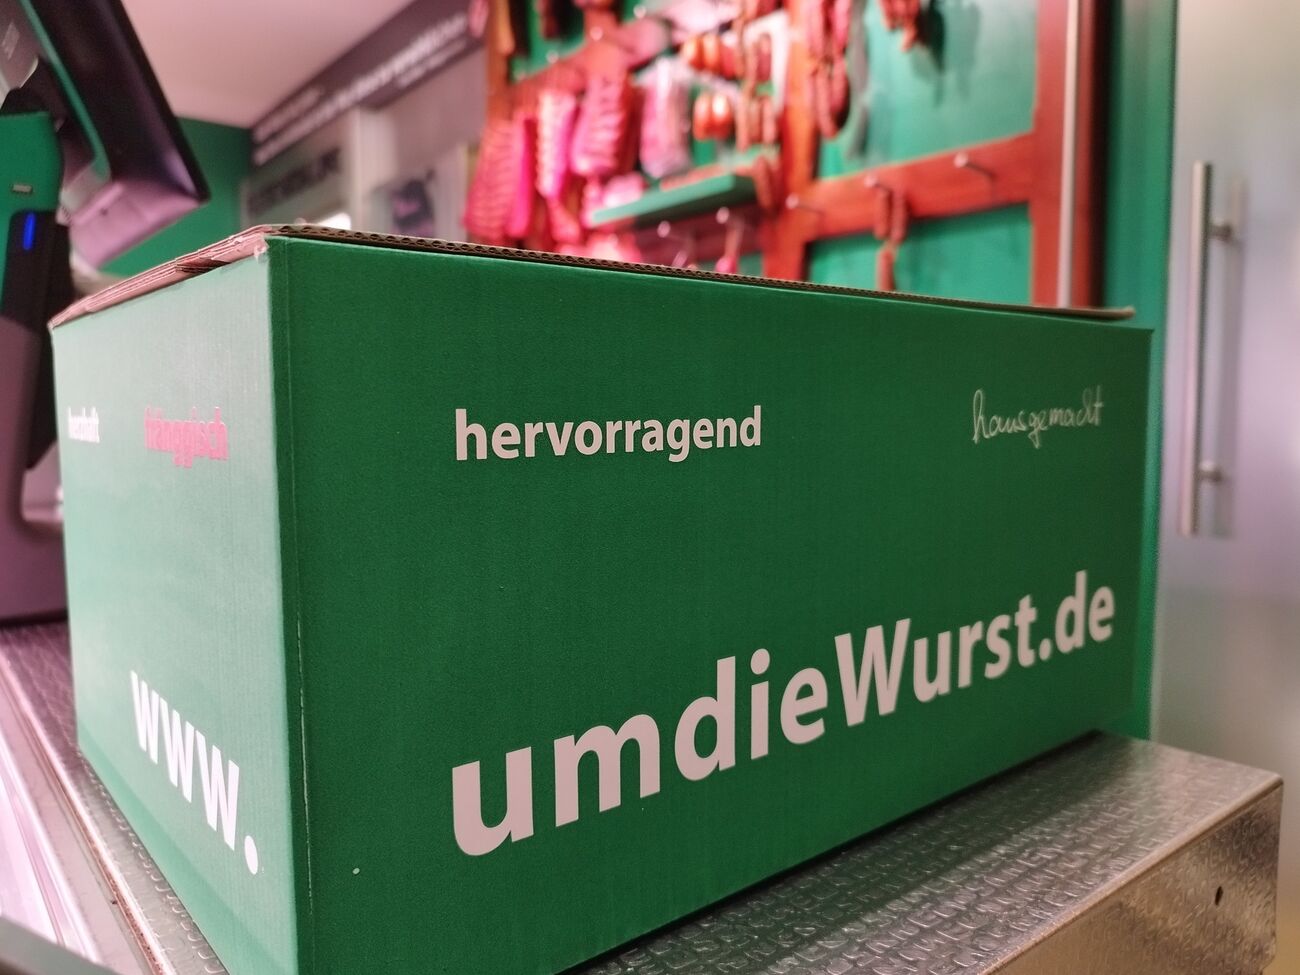 BRATWURST verkaufen-versenden-erleben - umdieWurst.de